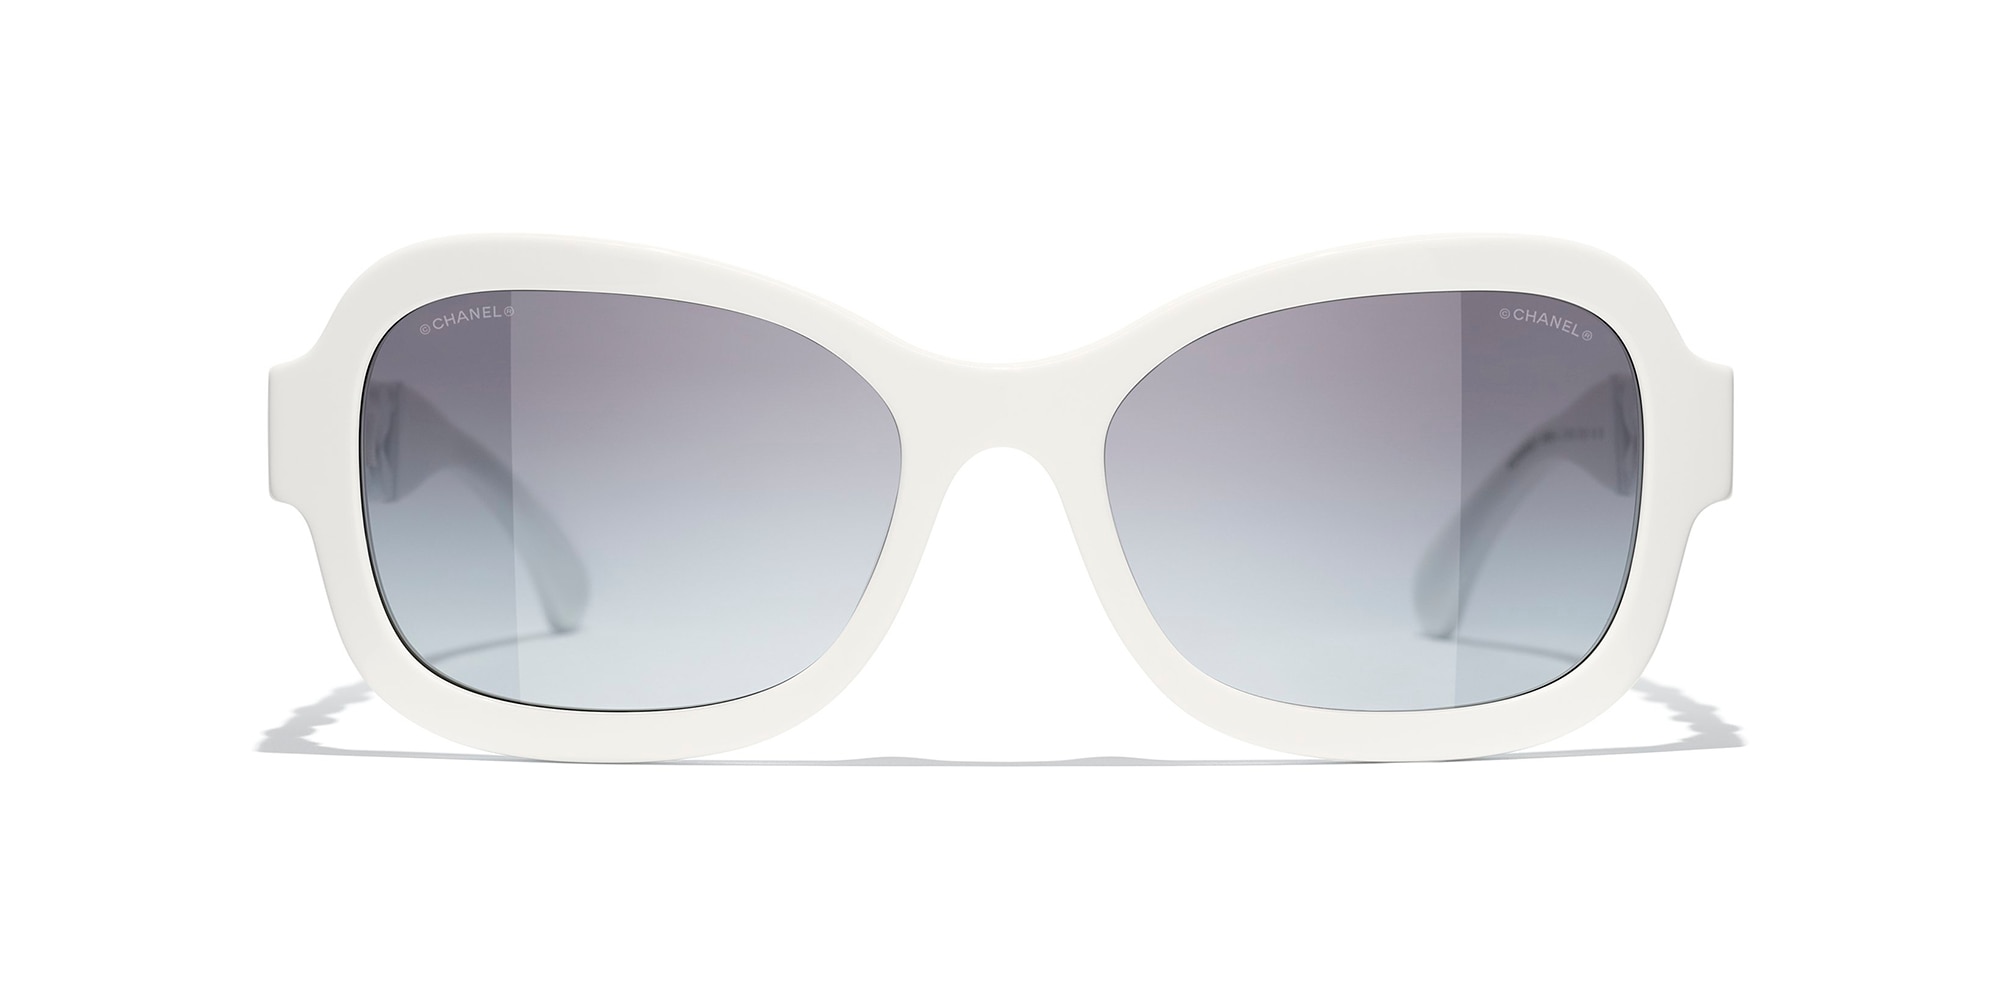 Chanel  Butterfly Sunglasses  Black White Gray  Chanel Eyewear  Avvenice